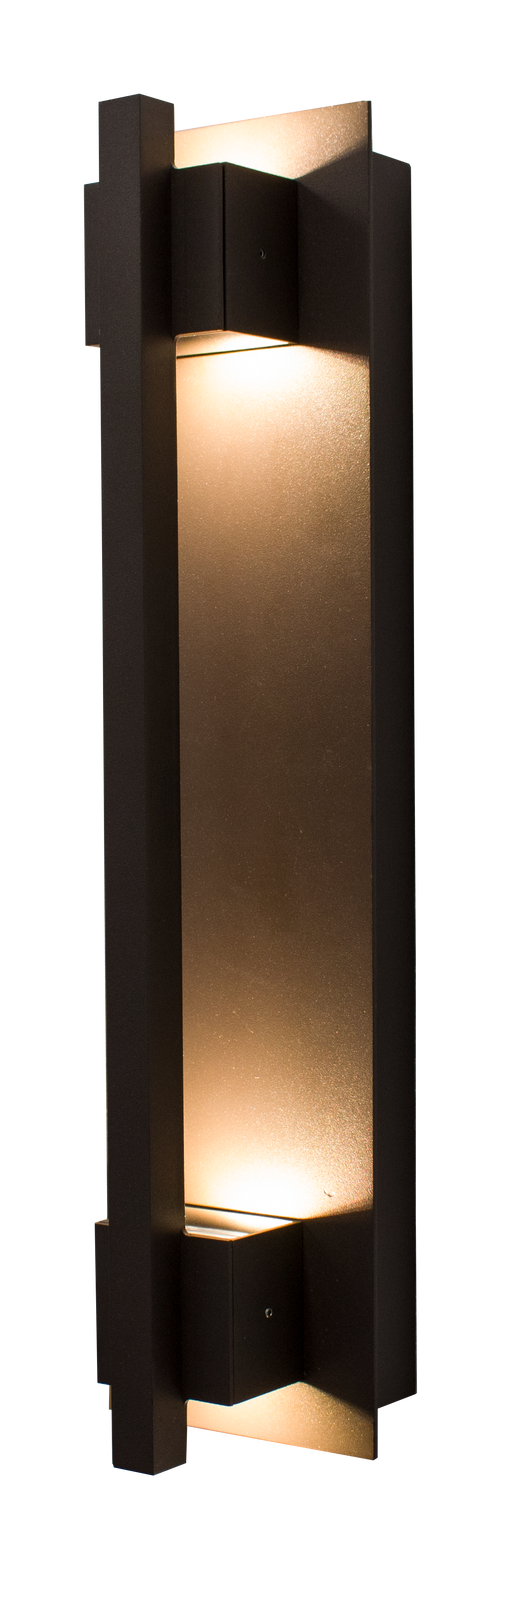 Westgate Manufacturing Crest By Westgate LED Wall Mount Sconces 1800Lm 5000K 120-277V Dark Bronze (CRE-HL20-03-50K-BR)